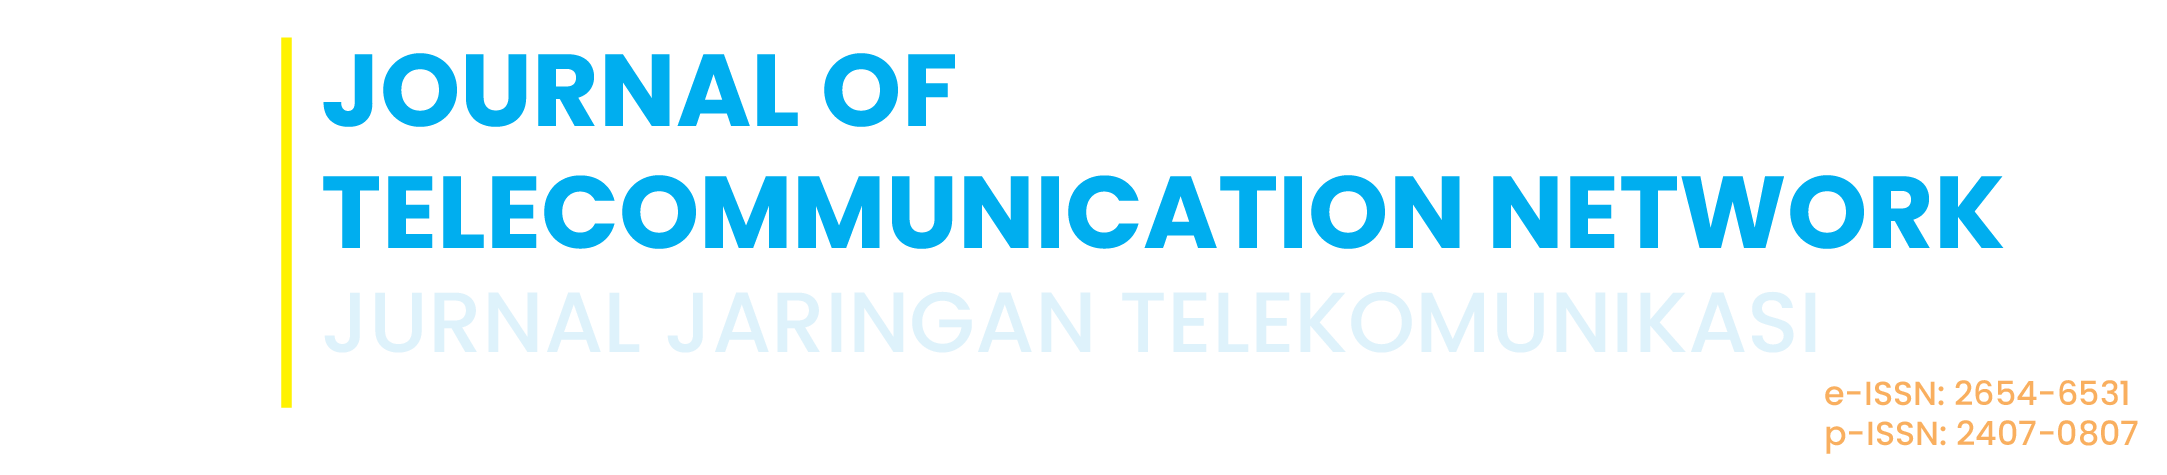 Journal of Telecommunication Network